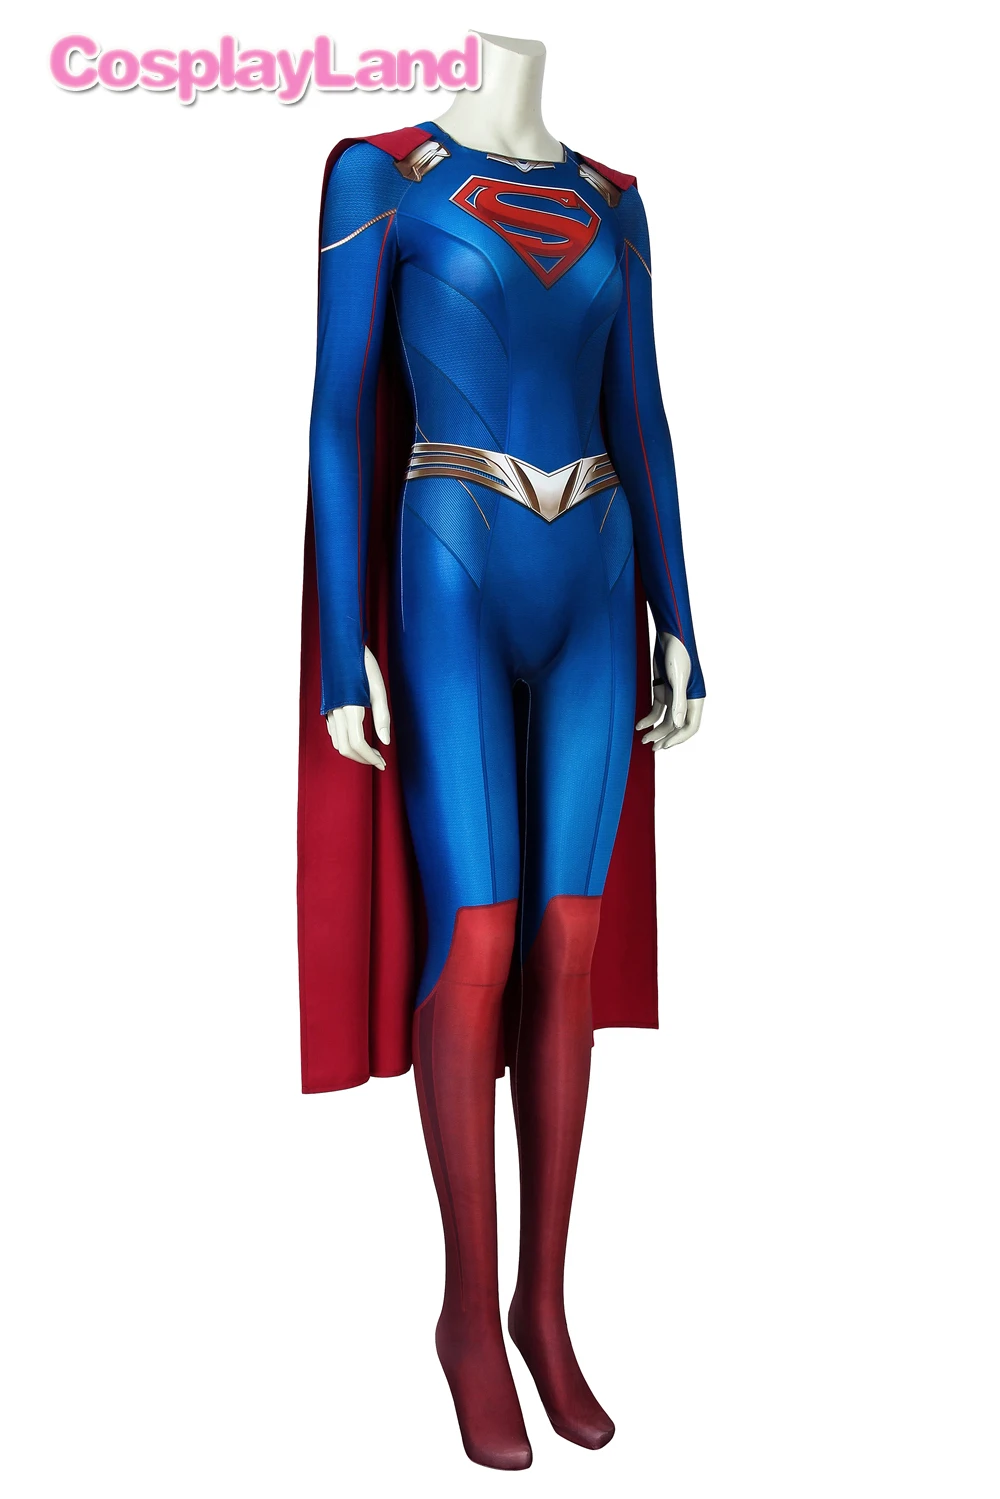 Fantasia feminina 3d super girl temporada 5, vestimenta para cosplay de kara nadador, roupa de halloween para mulheres body azul